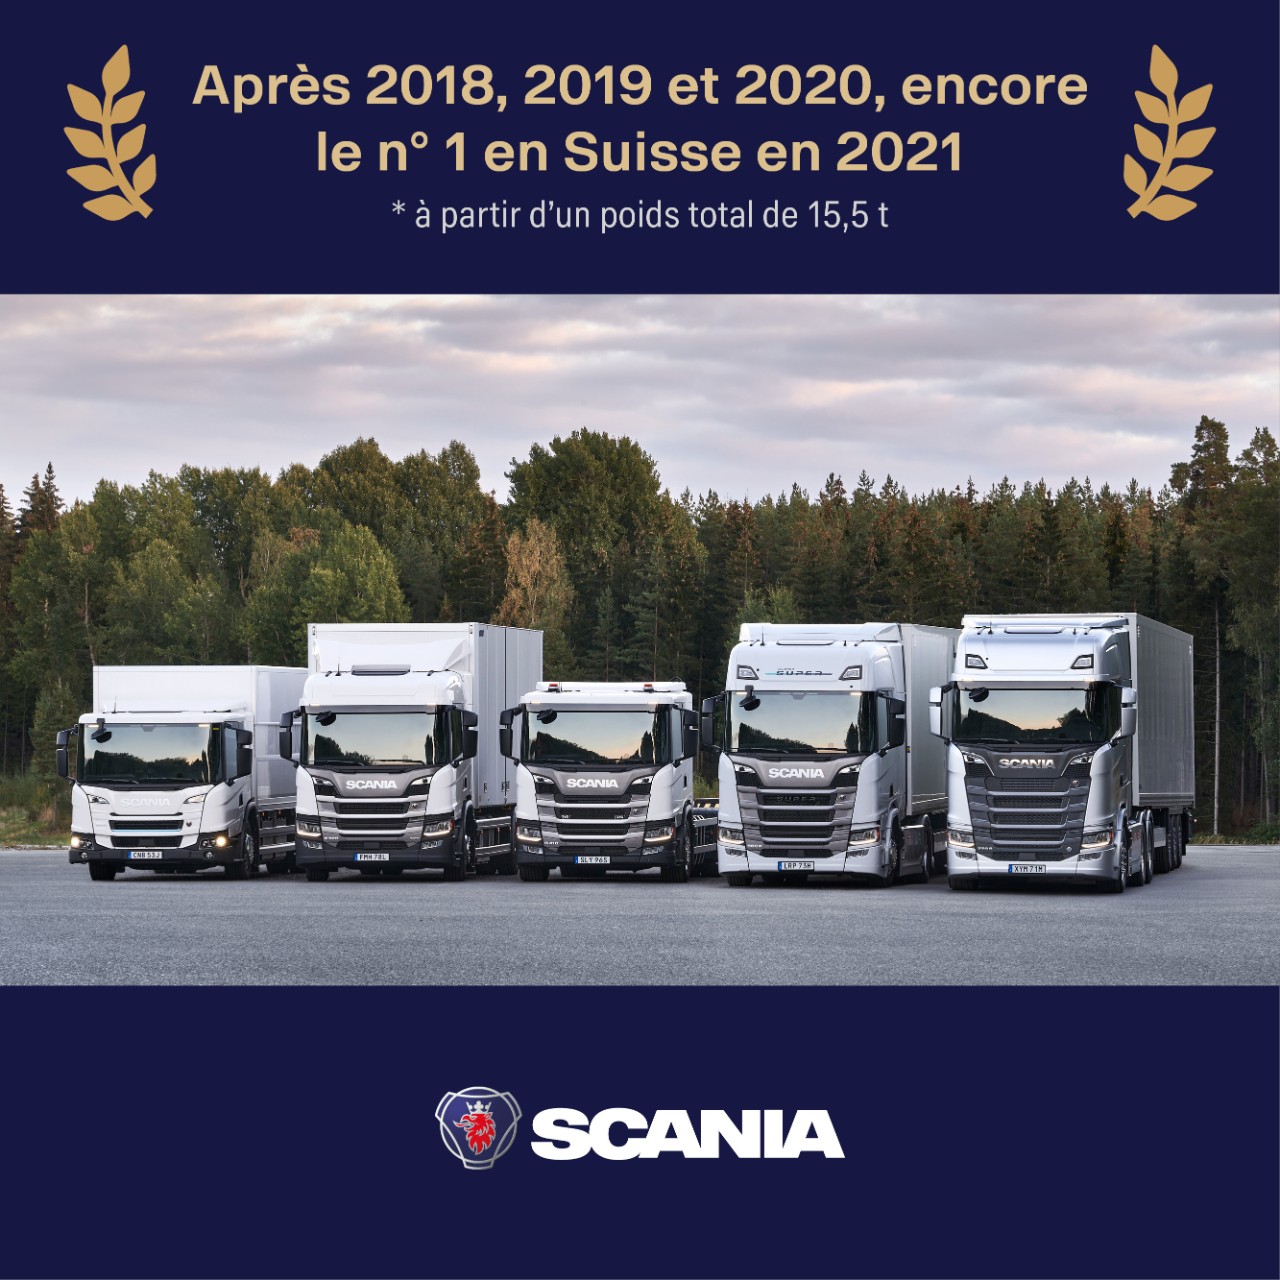 Scania à nouveau leader du marché des véhicules utilitaires lourds en 2021